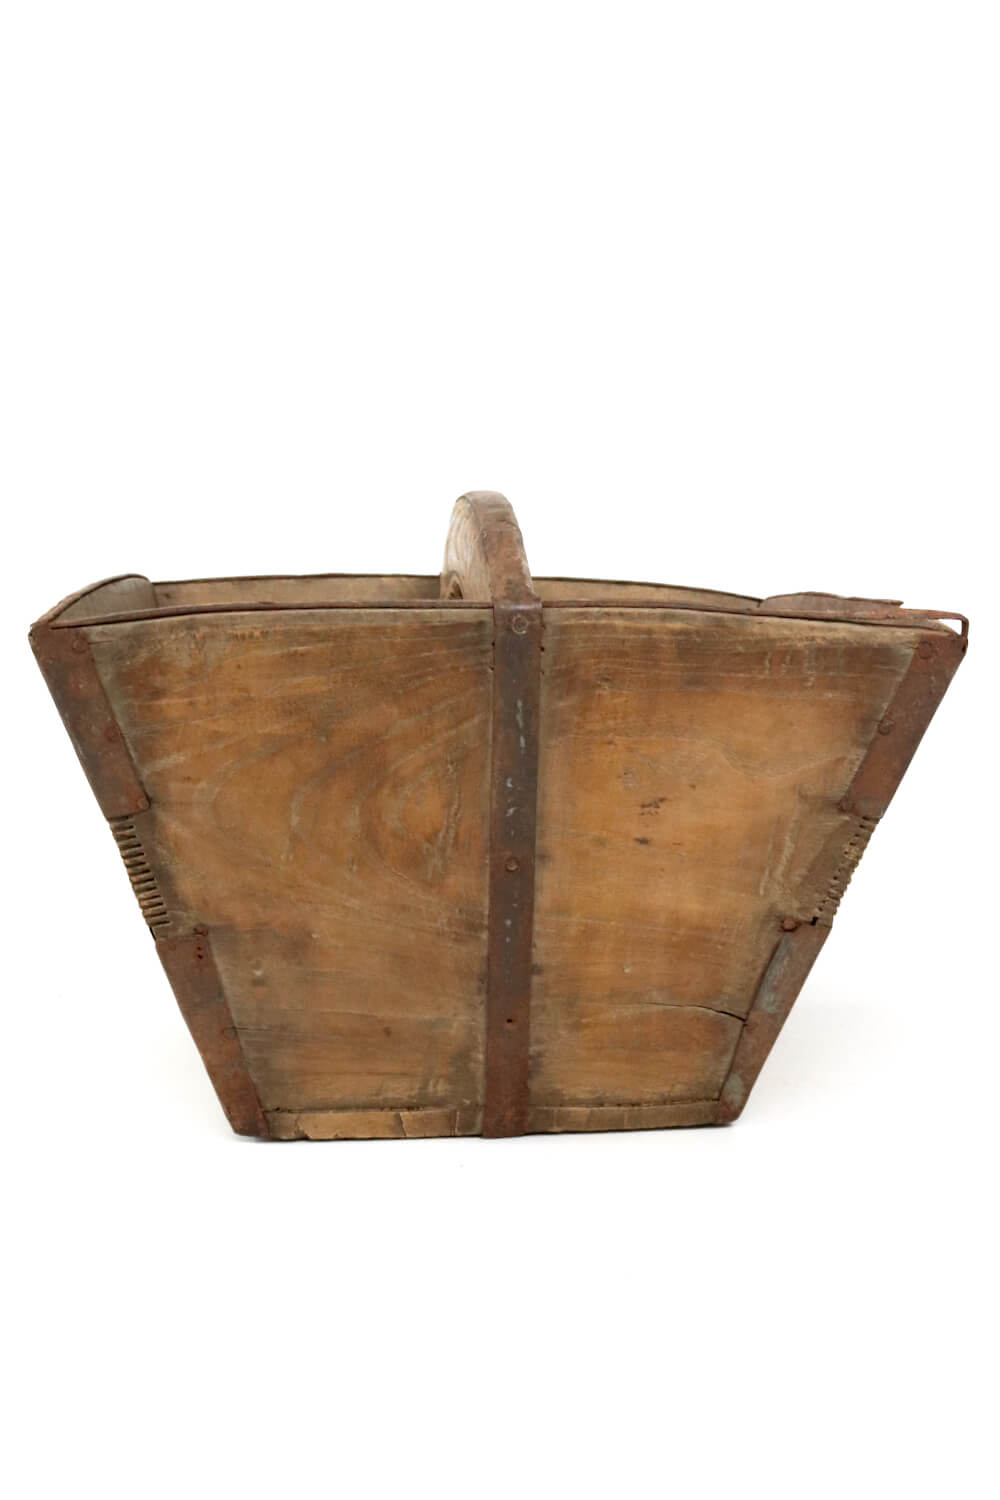 Reiskorb antik aus Holz mit Griff